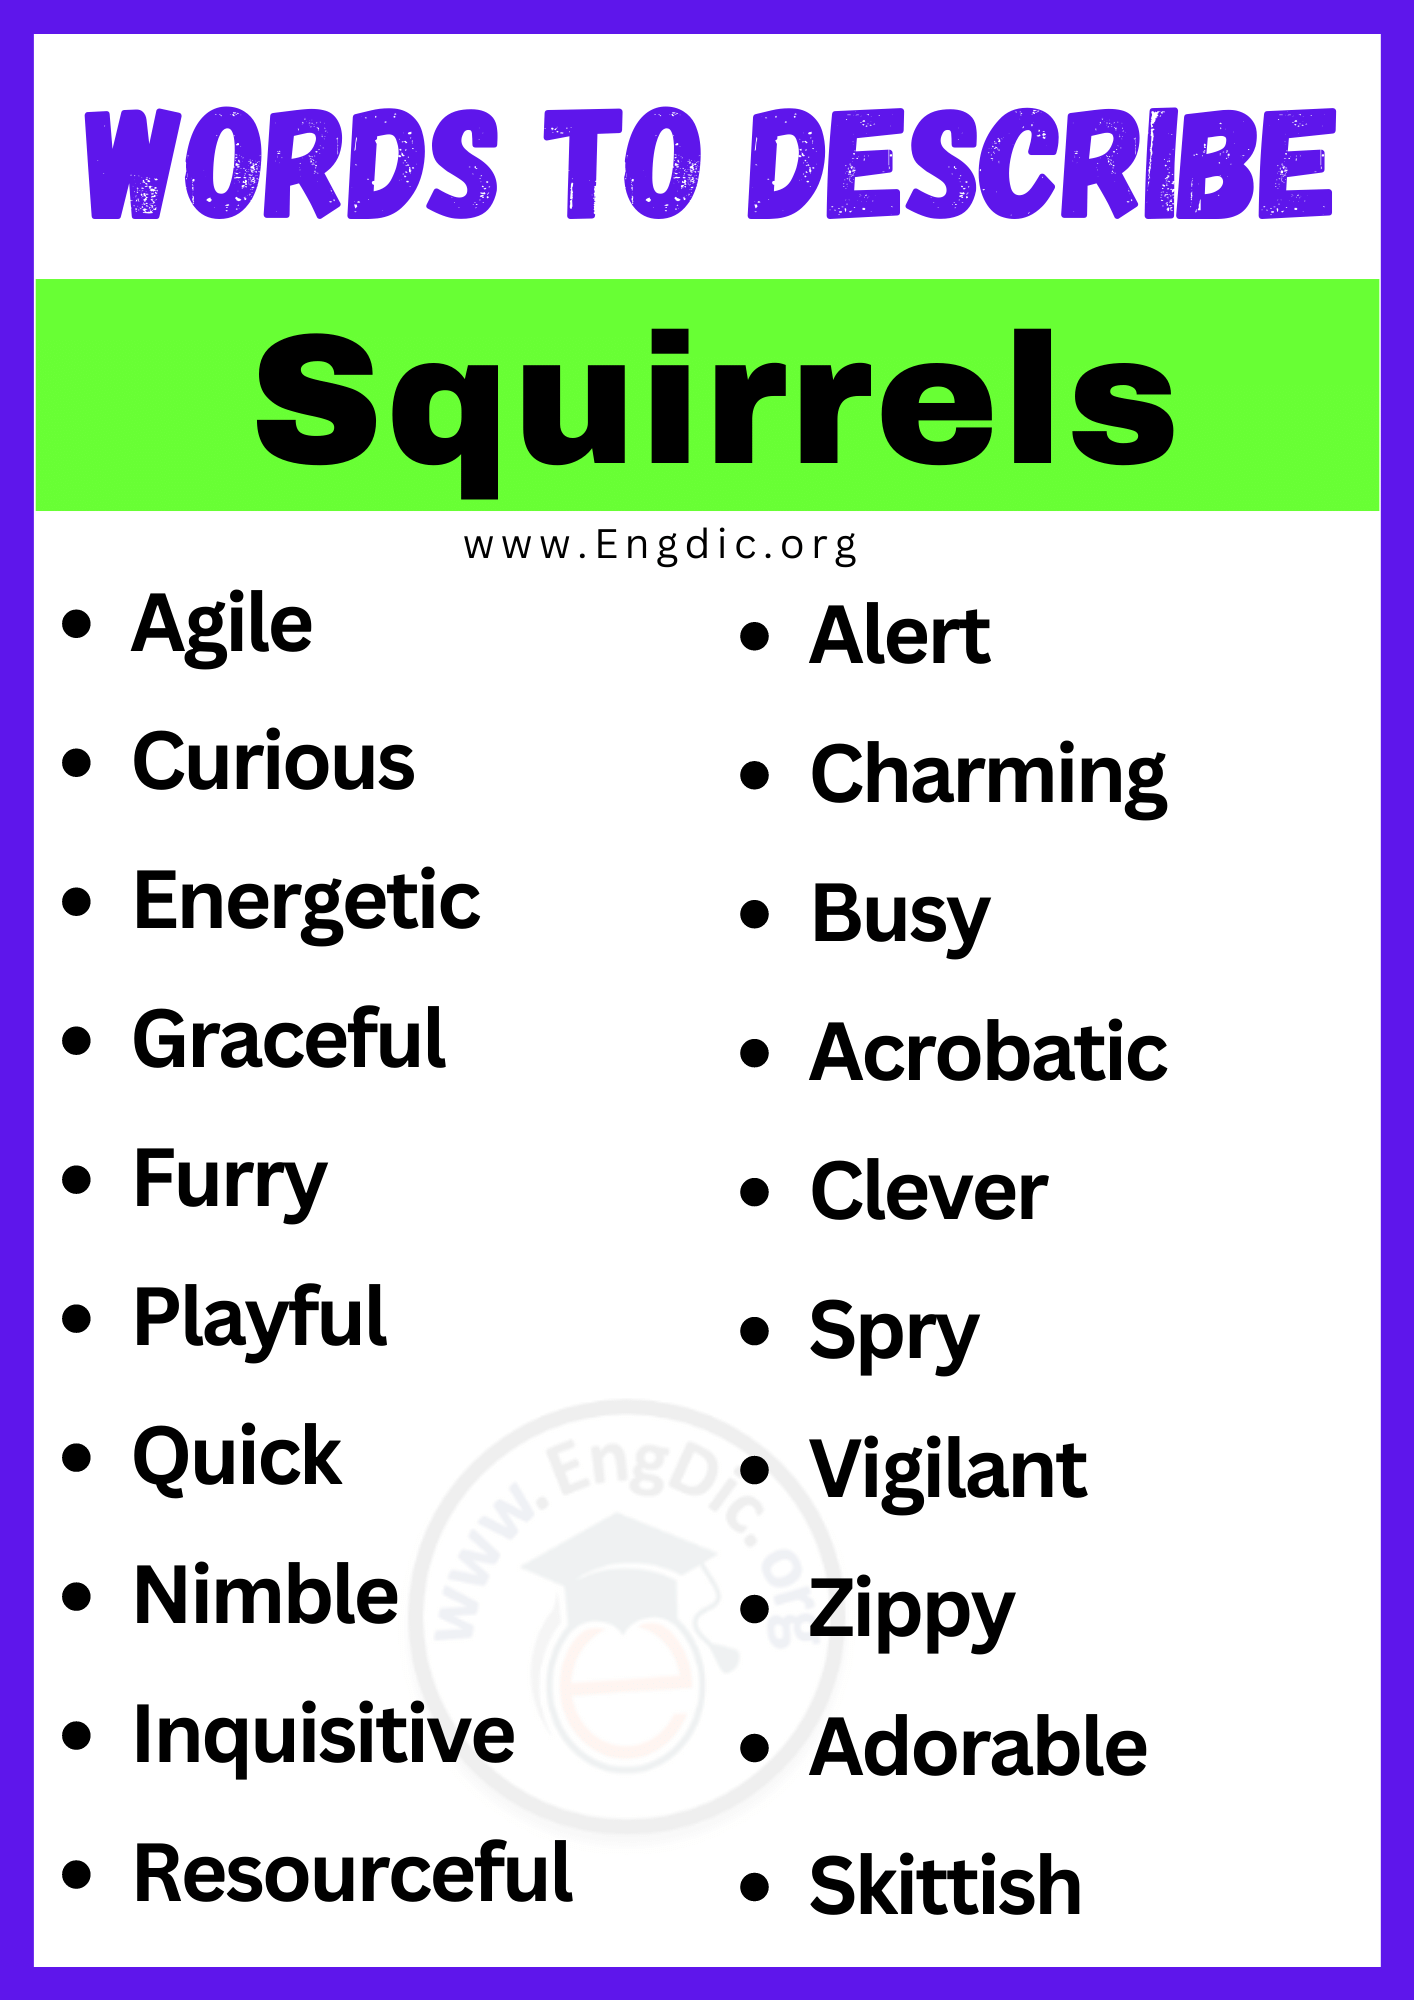 Words to Describe Squirrels